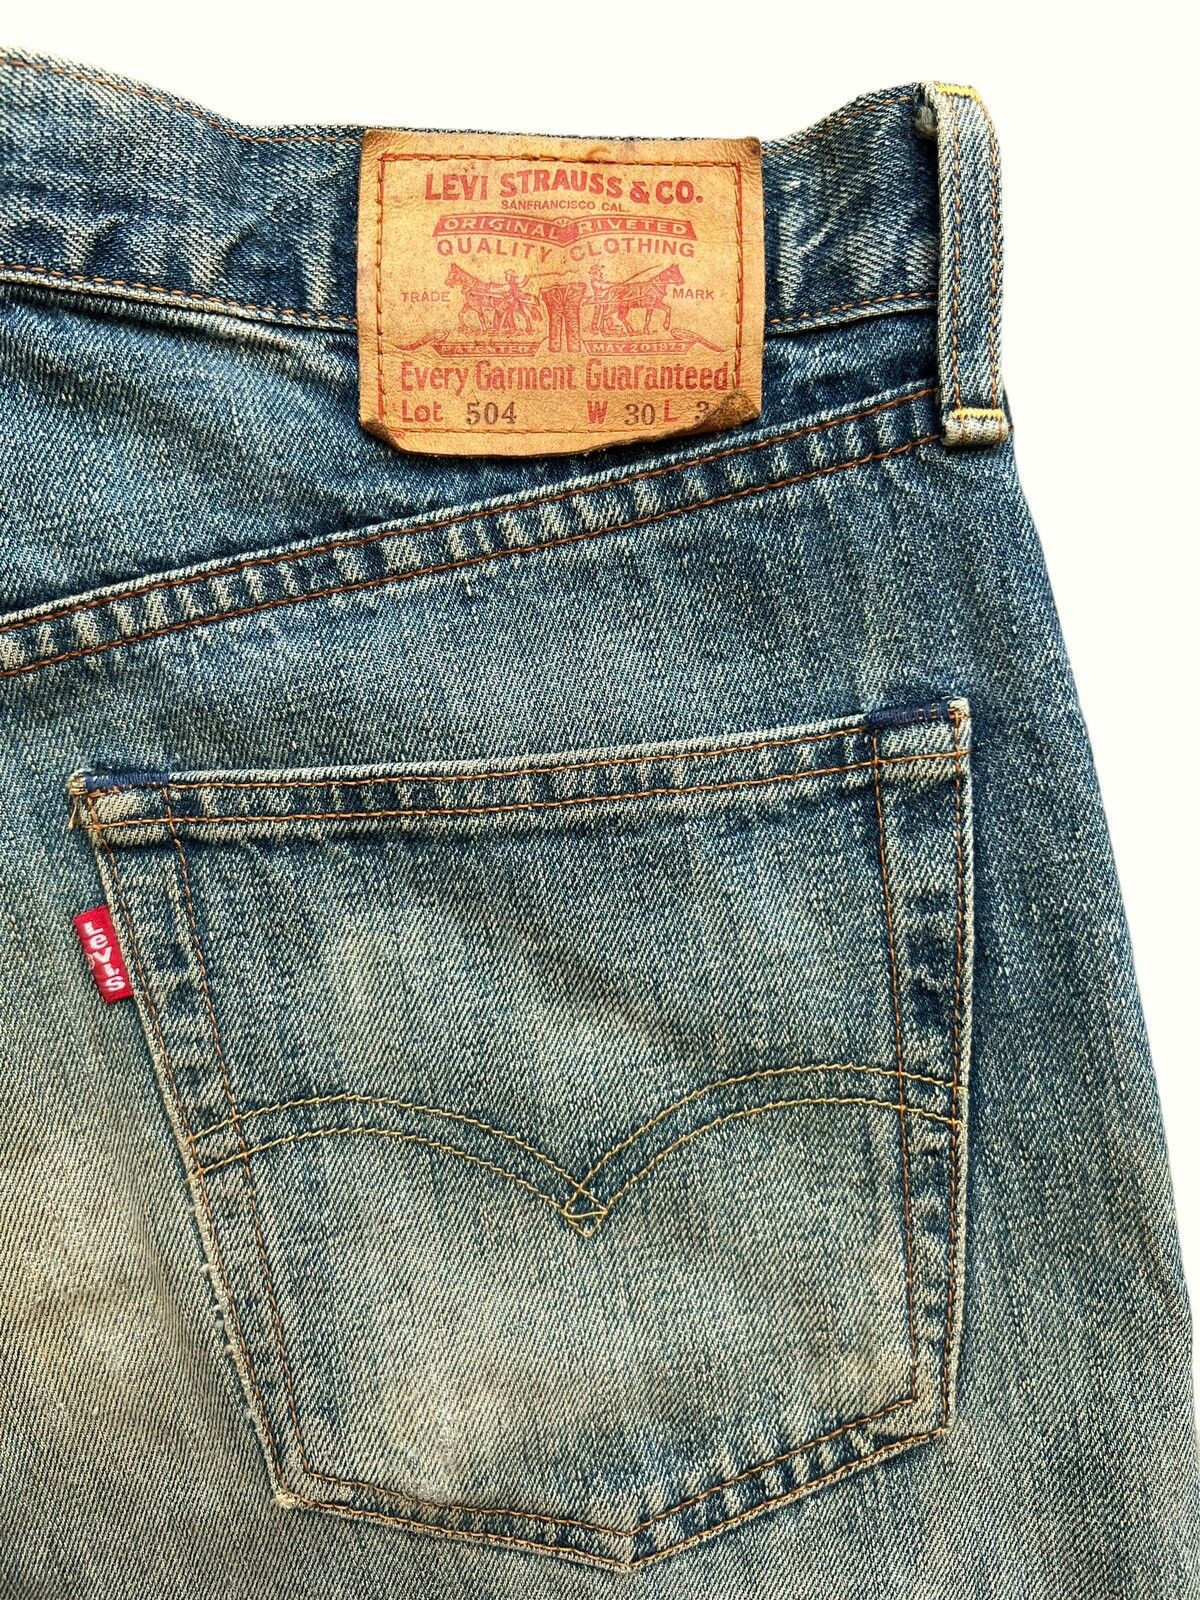 Vintage 90s Levis Distressed Mudwash Patch Denim Jeans 30x35 - 9